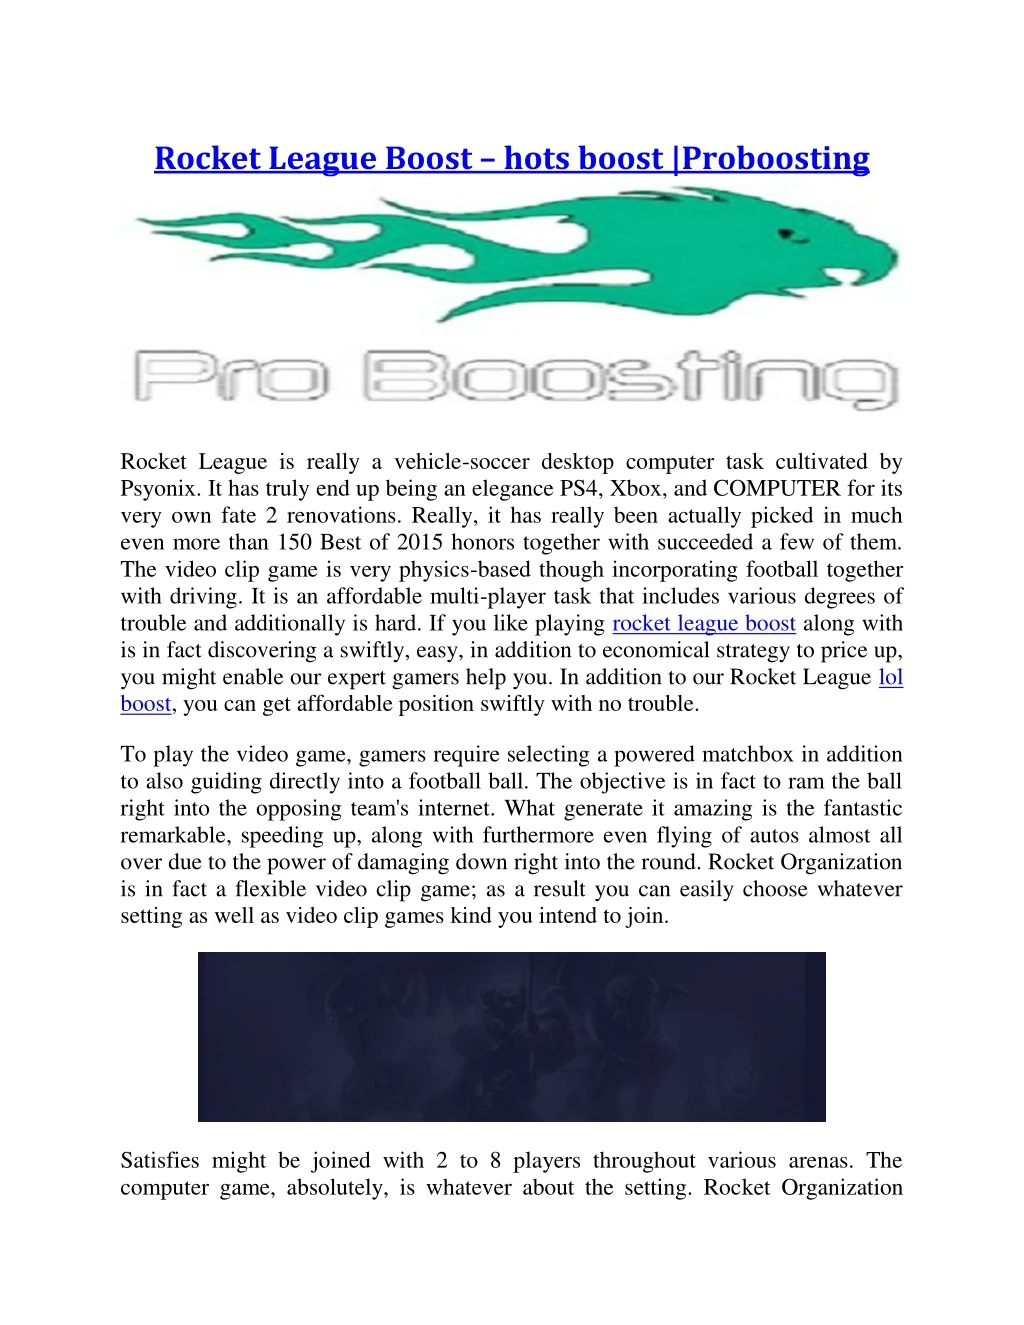 rocket league boost hots boost proboosting